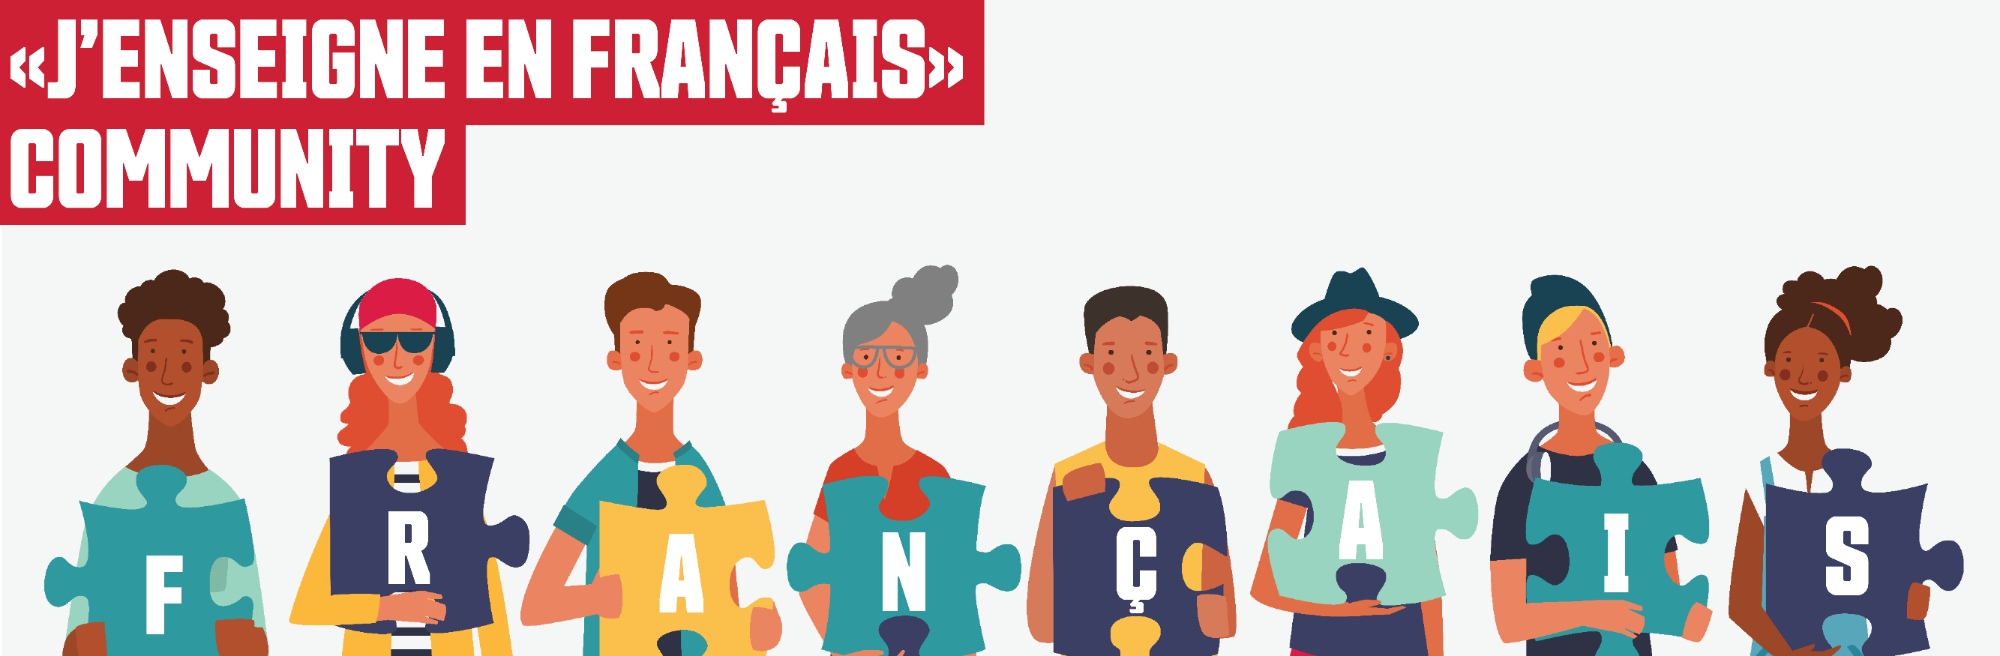 Développement professionel et service pour enseignants - French Education Pro-D and services for teachers